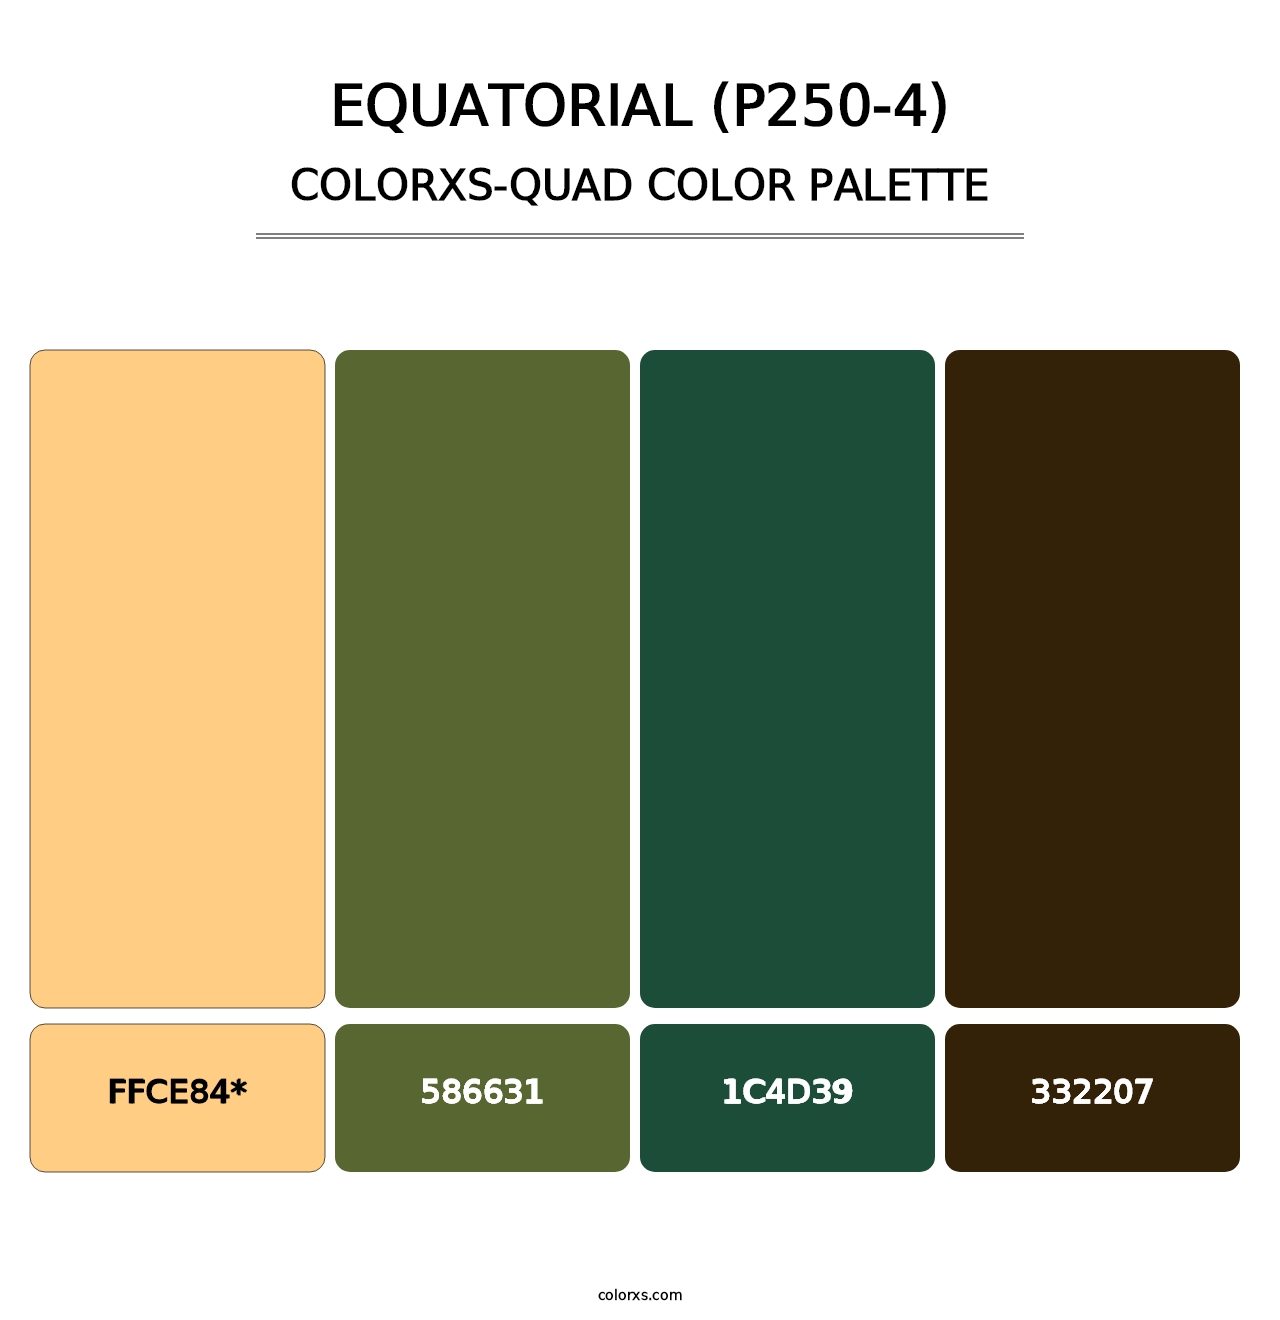 Equatorial (P250-4) - Colorxs Quad Palette